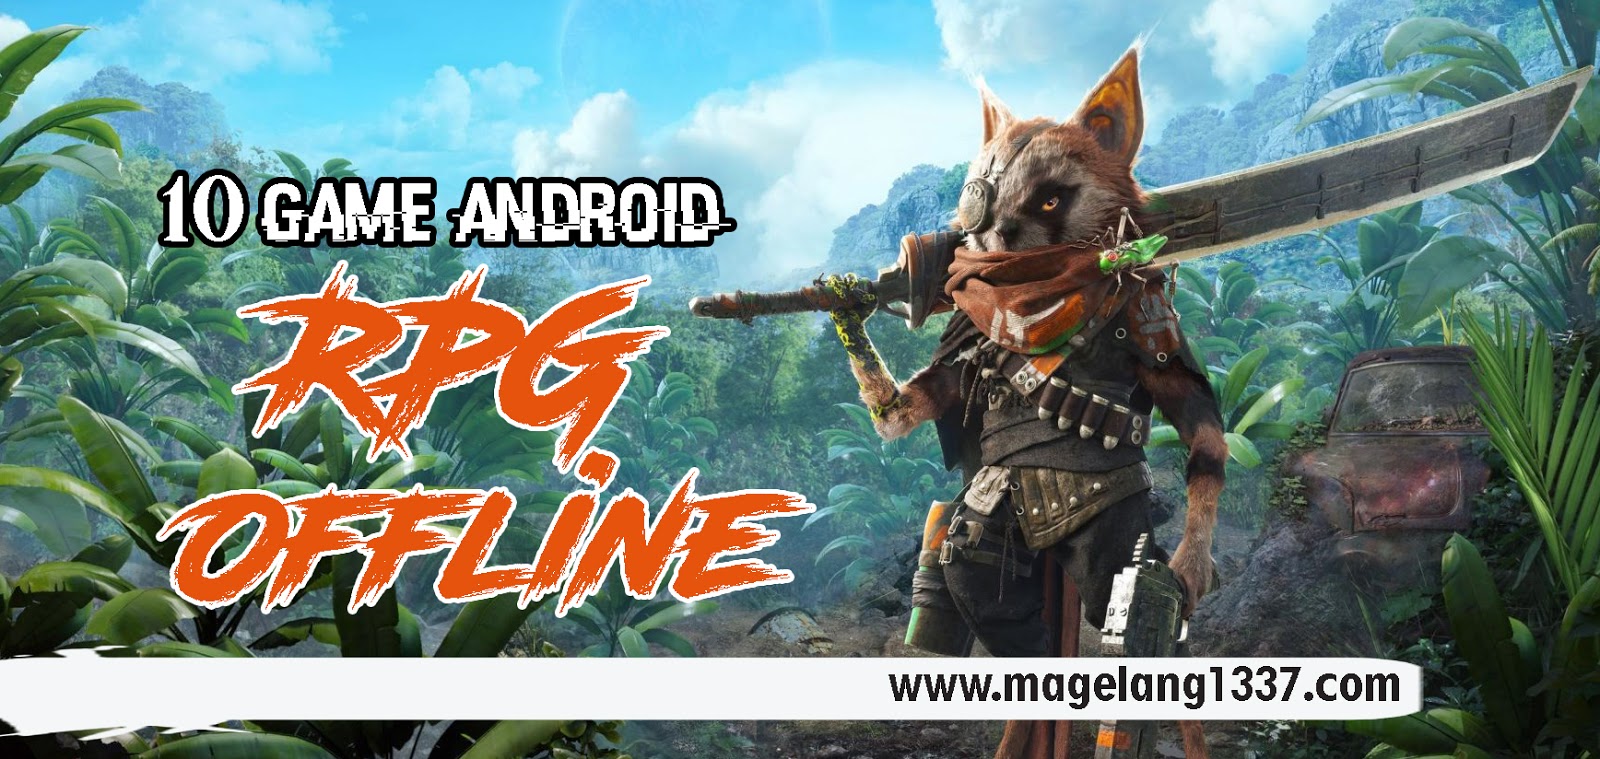 10 Game Android RPG Offline Versi MnHBlog